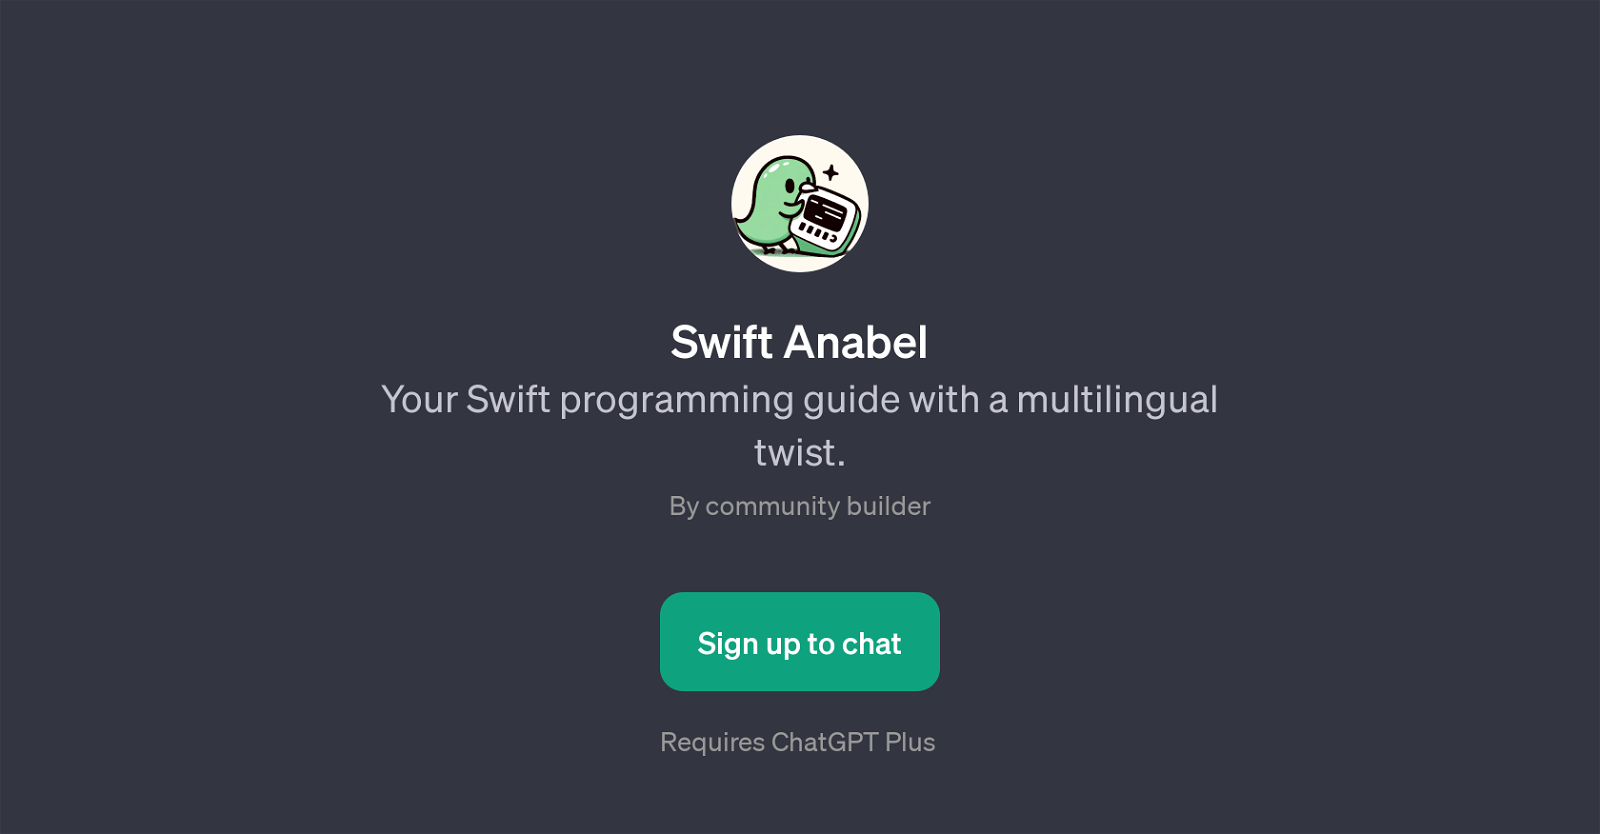 Swift Anabel website